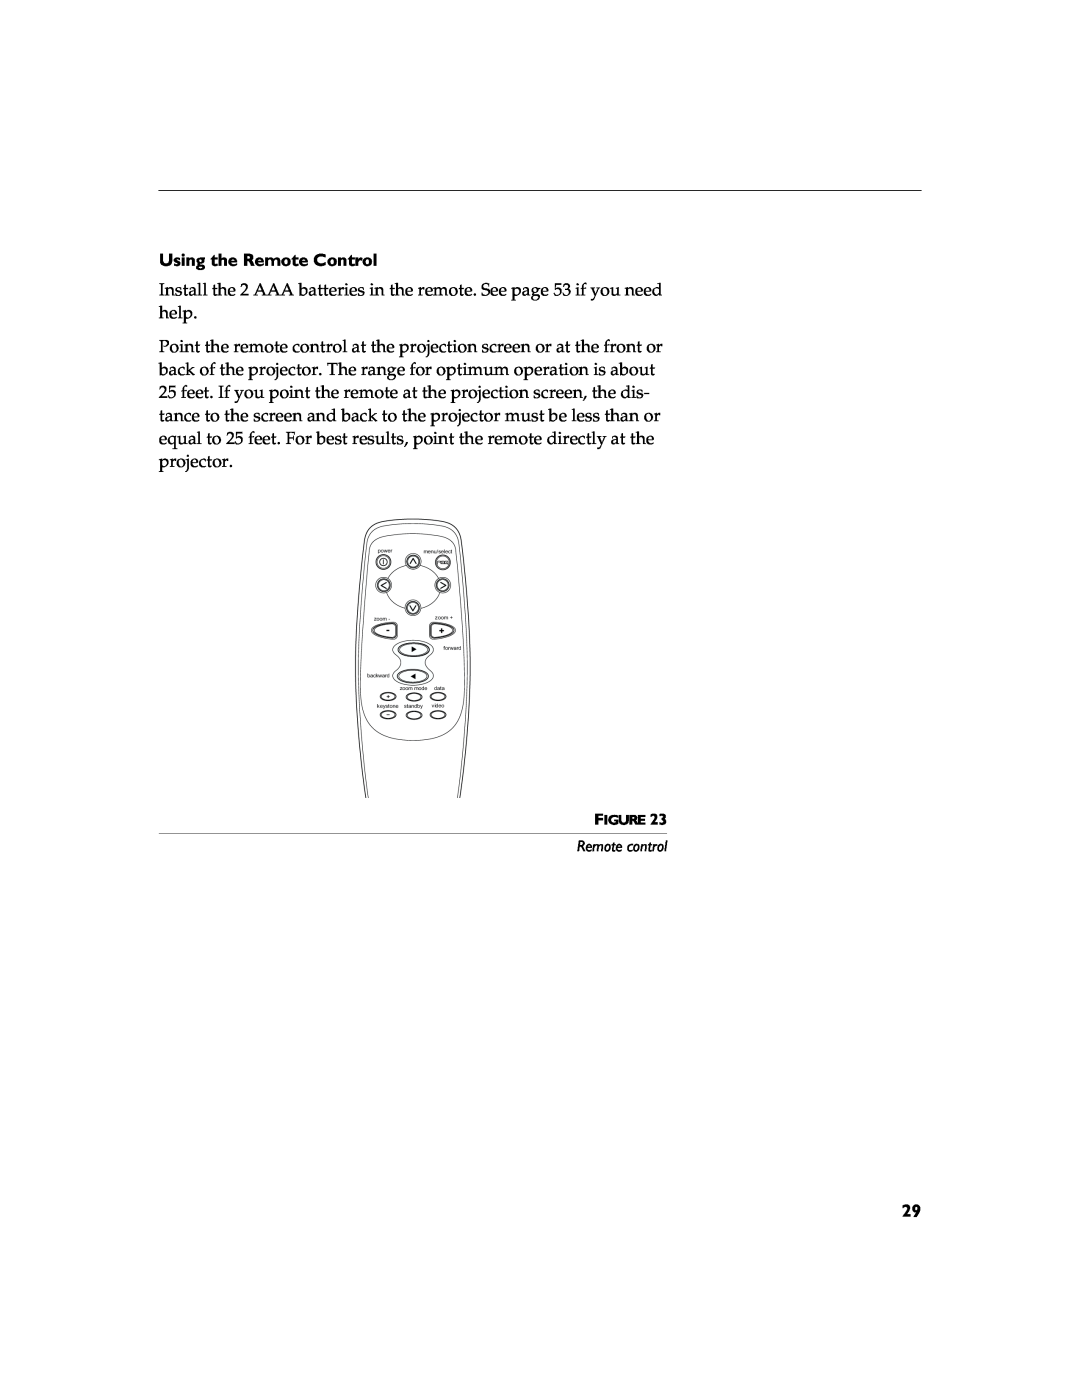 BOXLIGHT 12SF manual Using the Remote Control, Remote control 